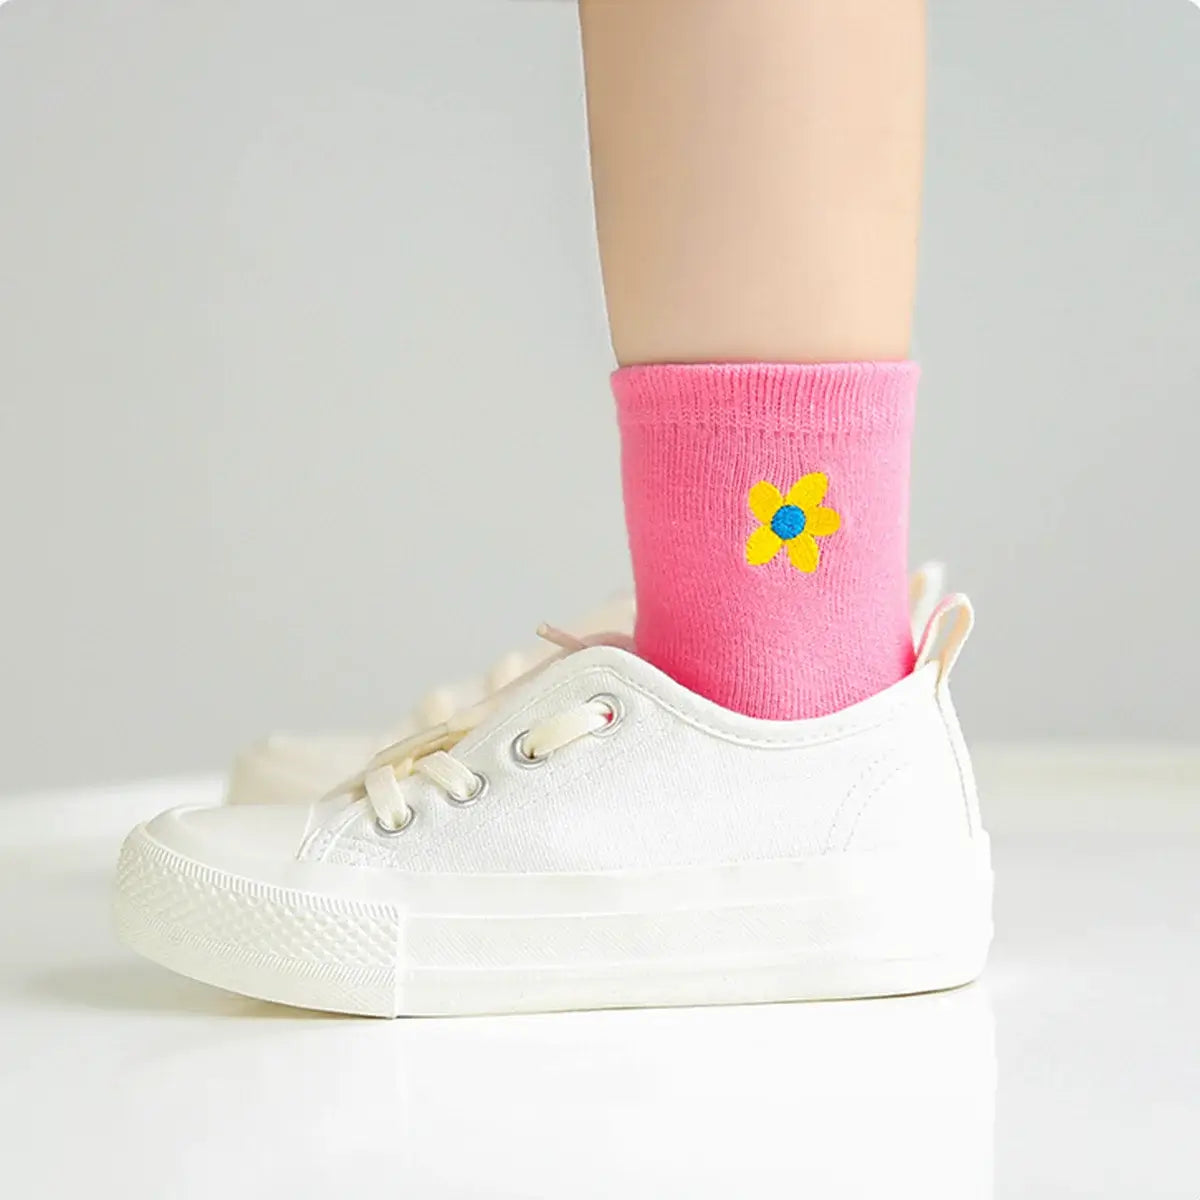 Chaussettes rose longues en coton à motif fleur pour enfants | Chaussettes douces et confortables | Disponibles en différentes tailles et couleurs | Un cadeau parfait pour les enfants de tous âges